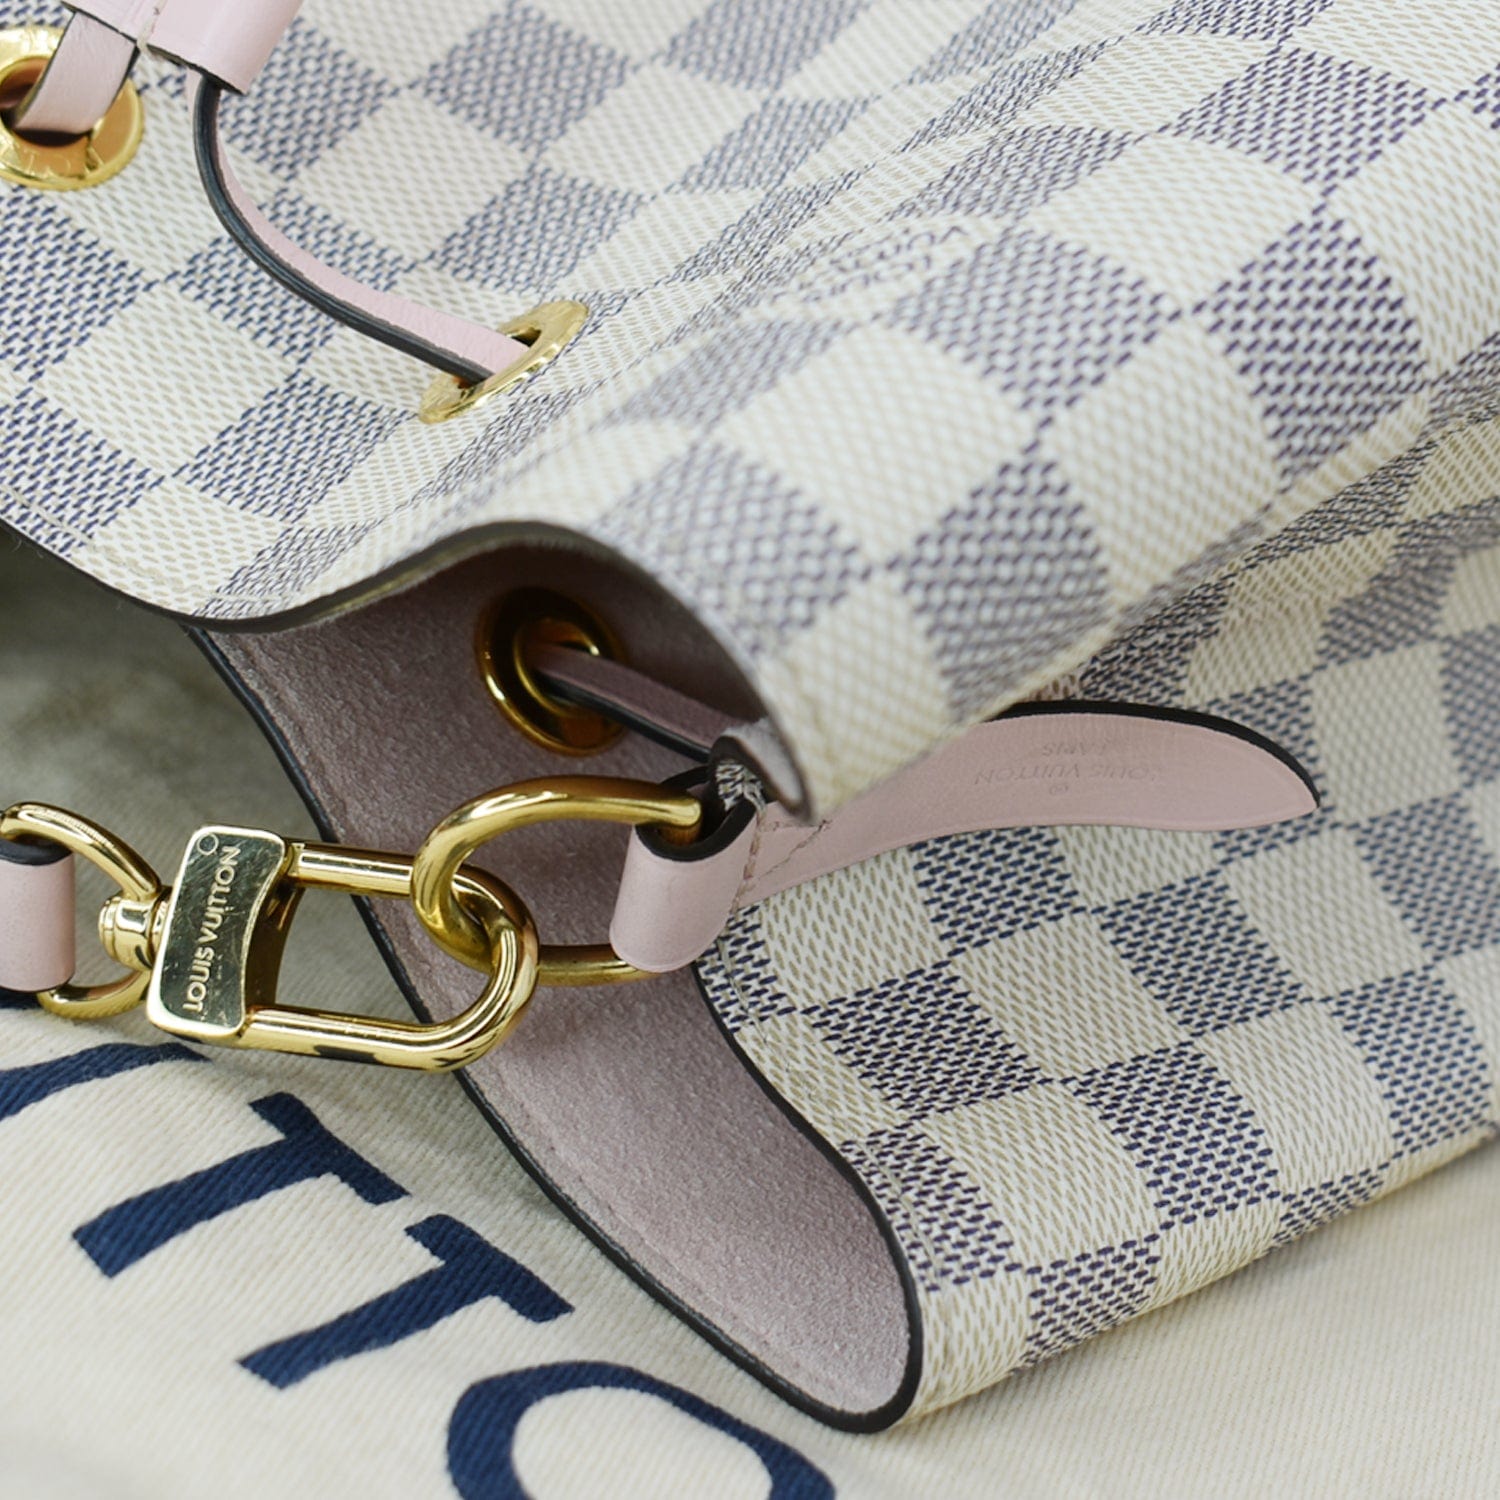 Louis Vuitton Damier Azur Neonoe Shoulder Bag Eau De Rose N40152